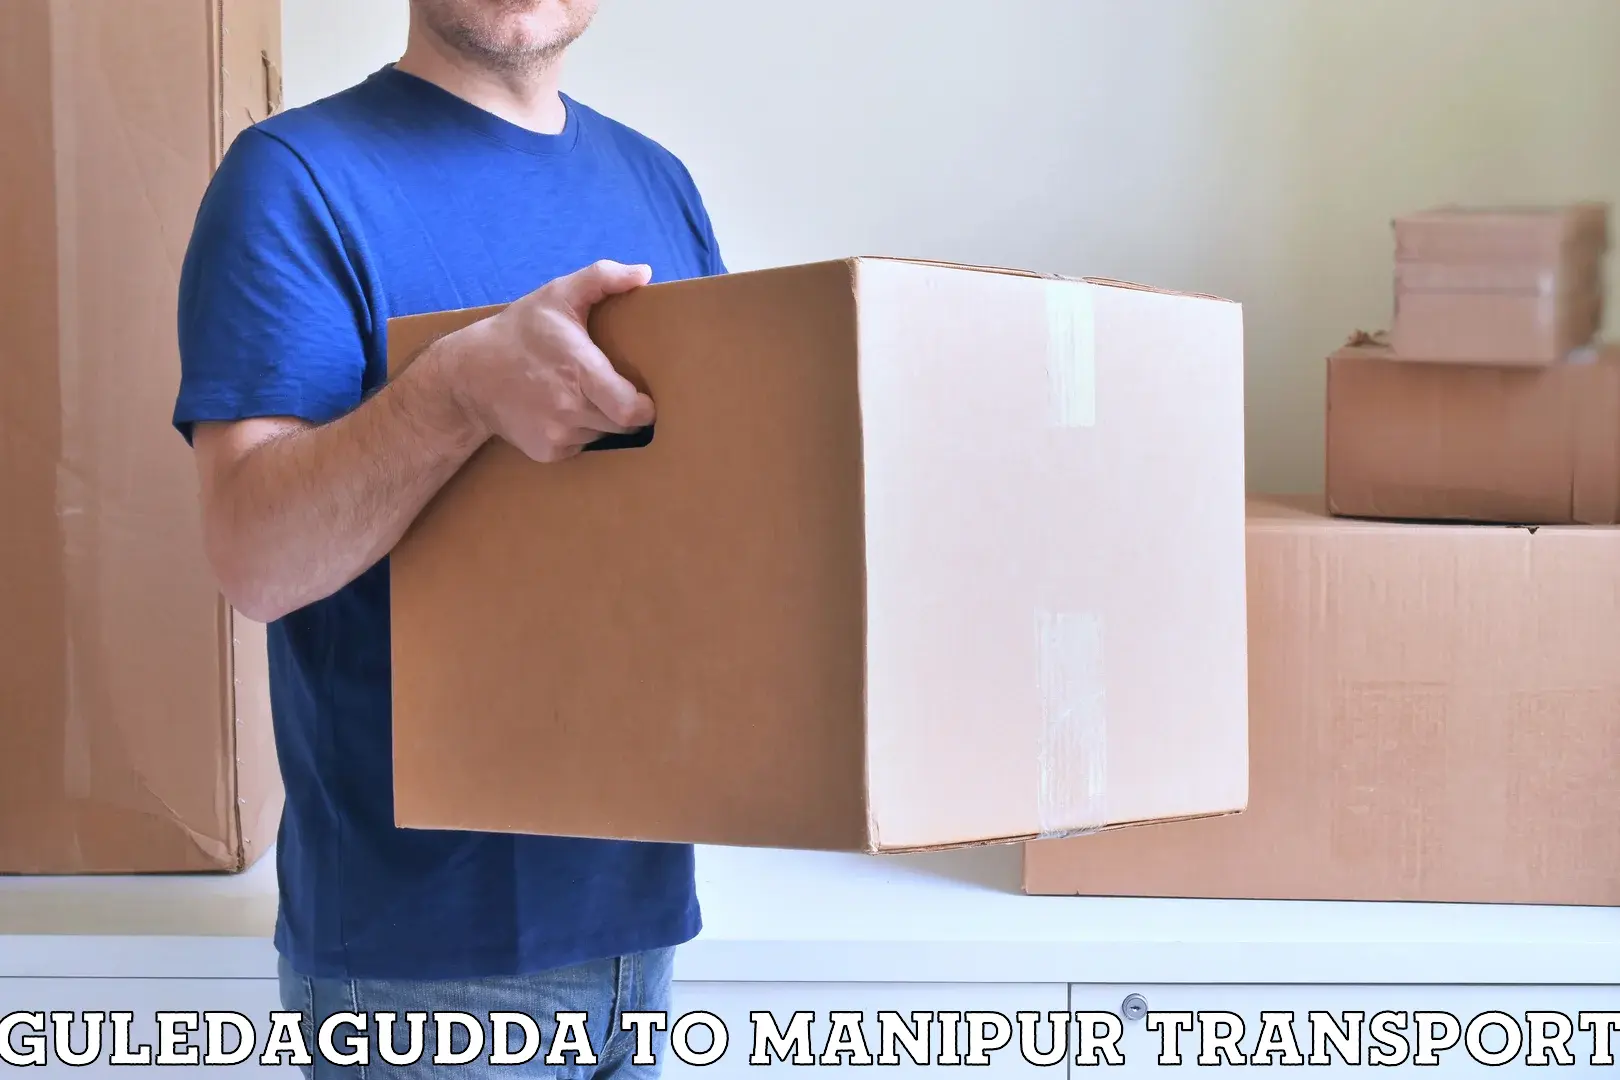 Container transport service Guledagudda to Chandel